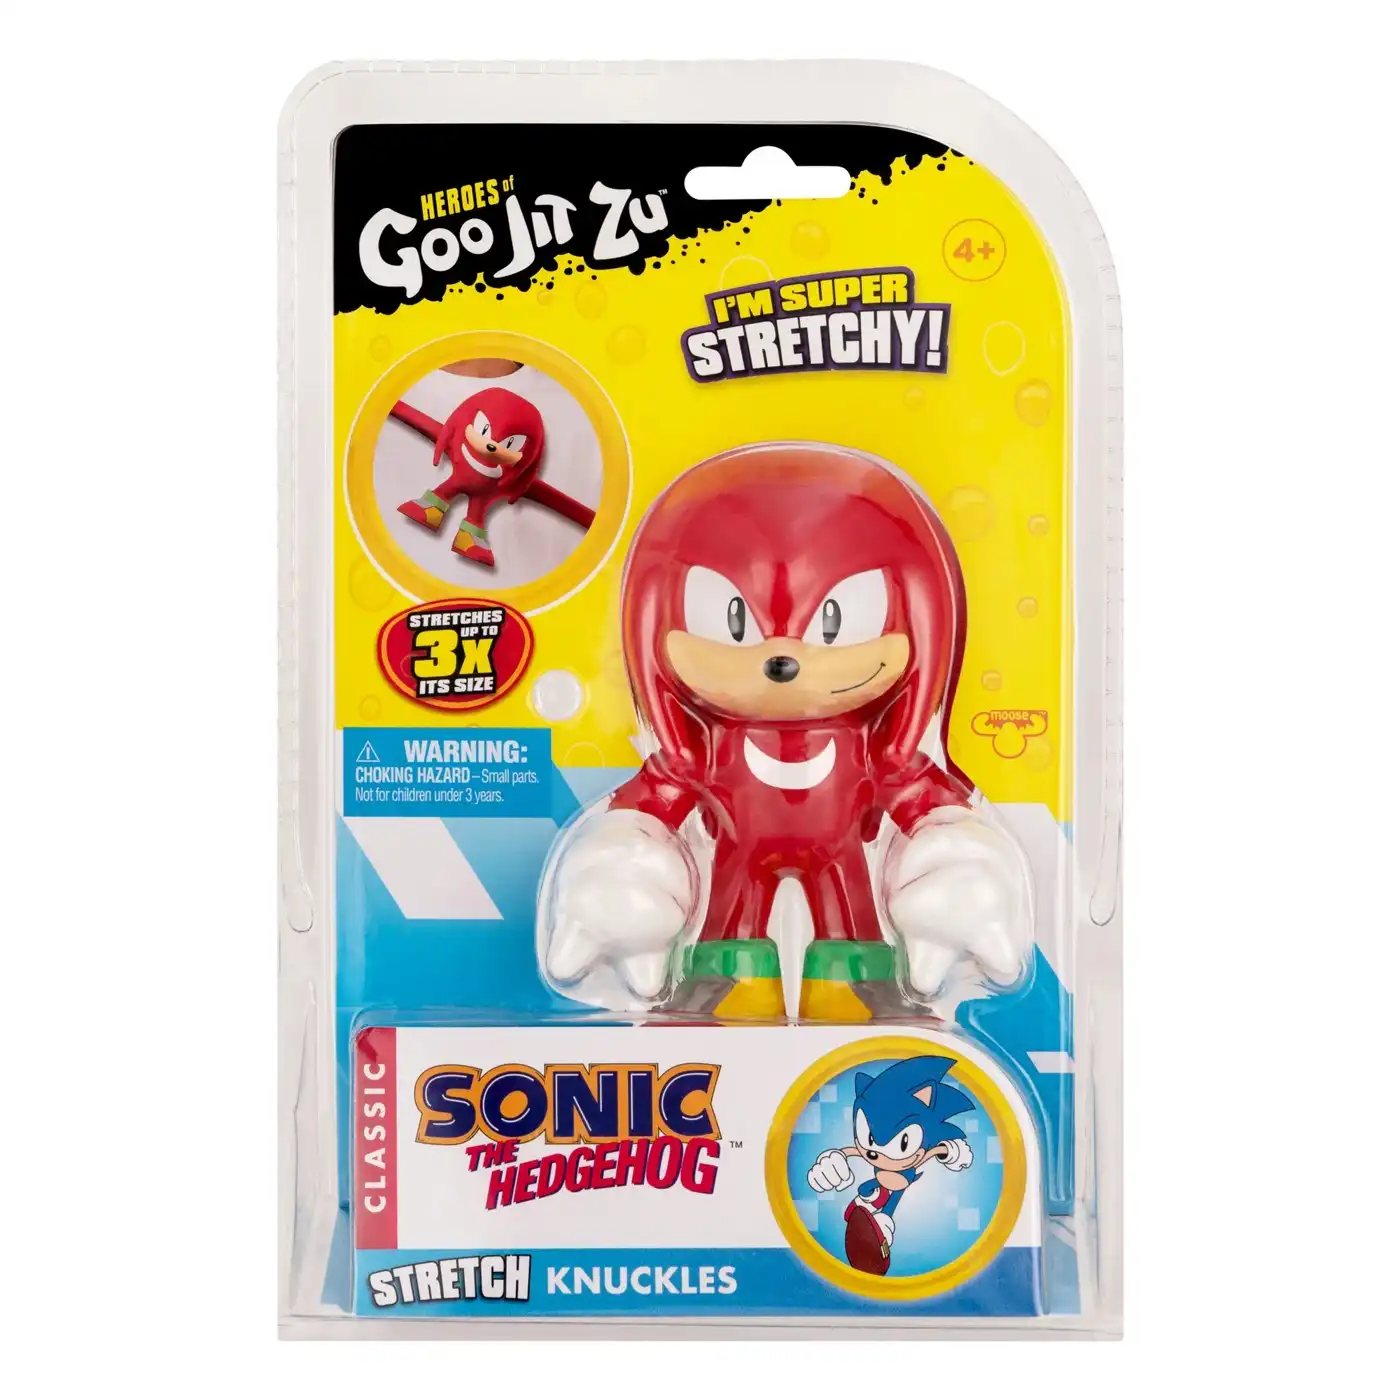 Heroes Of Goo Jit Zu Sonic The Hedgehog Assorted